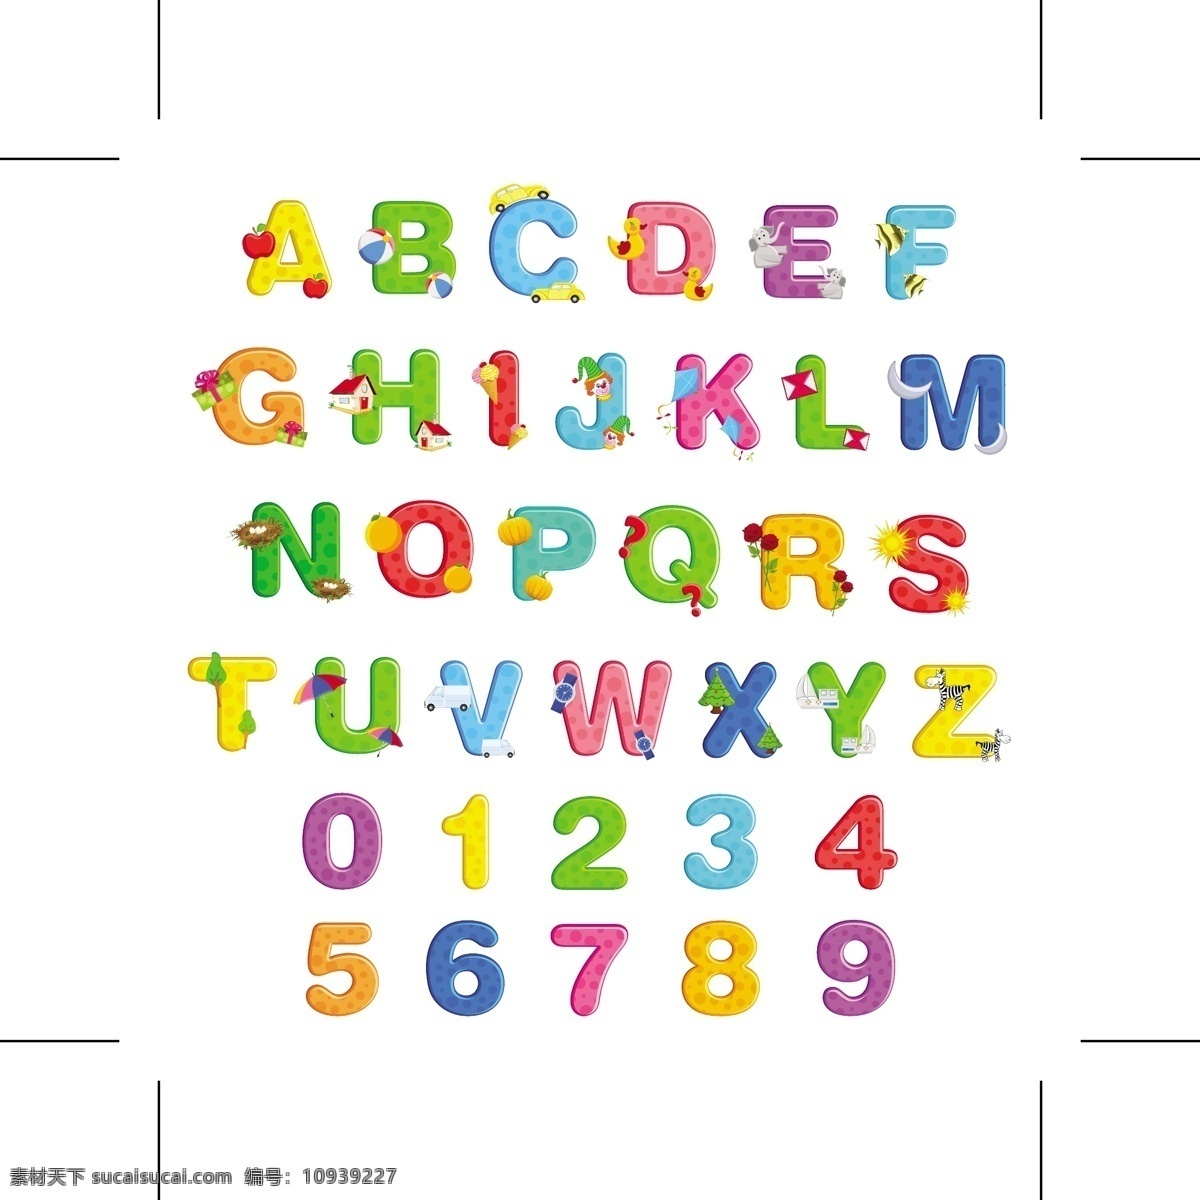 卡通abc abc 卡通 字母 设计分层图 采用艺术字体 26个字母 简单大方 卡通素材 卡通设计 矢量